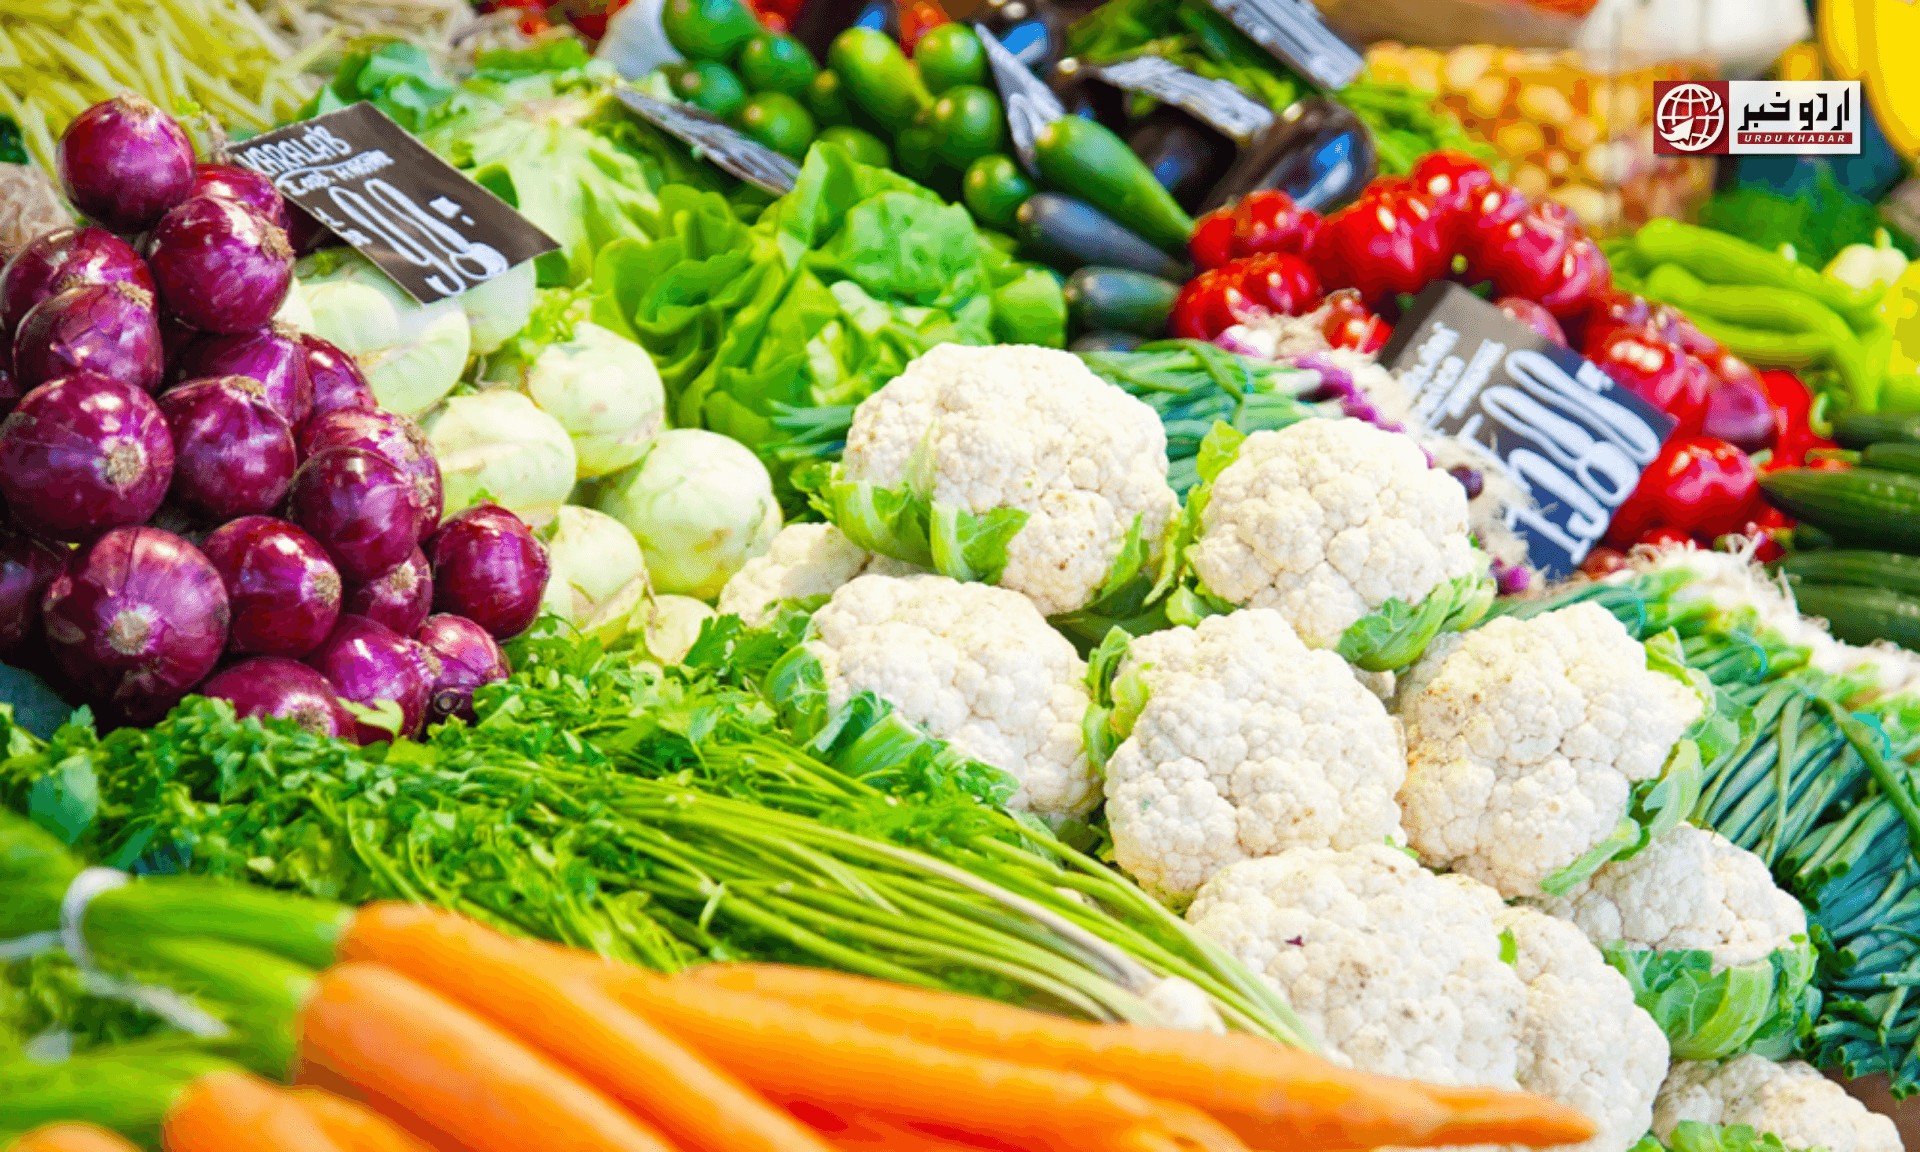 عید الاظحی کی آمد پر سبزیوں کی قیمتوں میں اضافہ